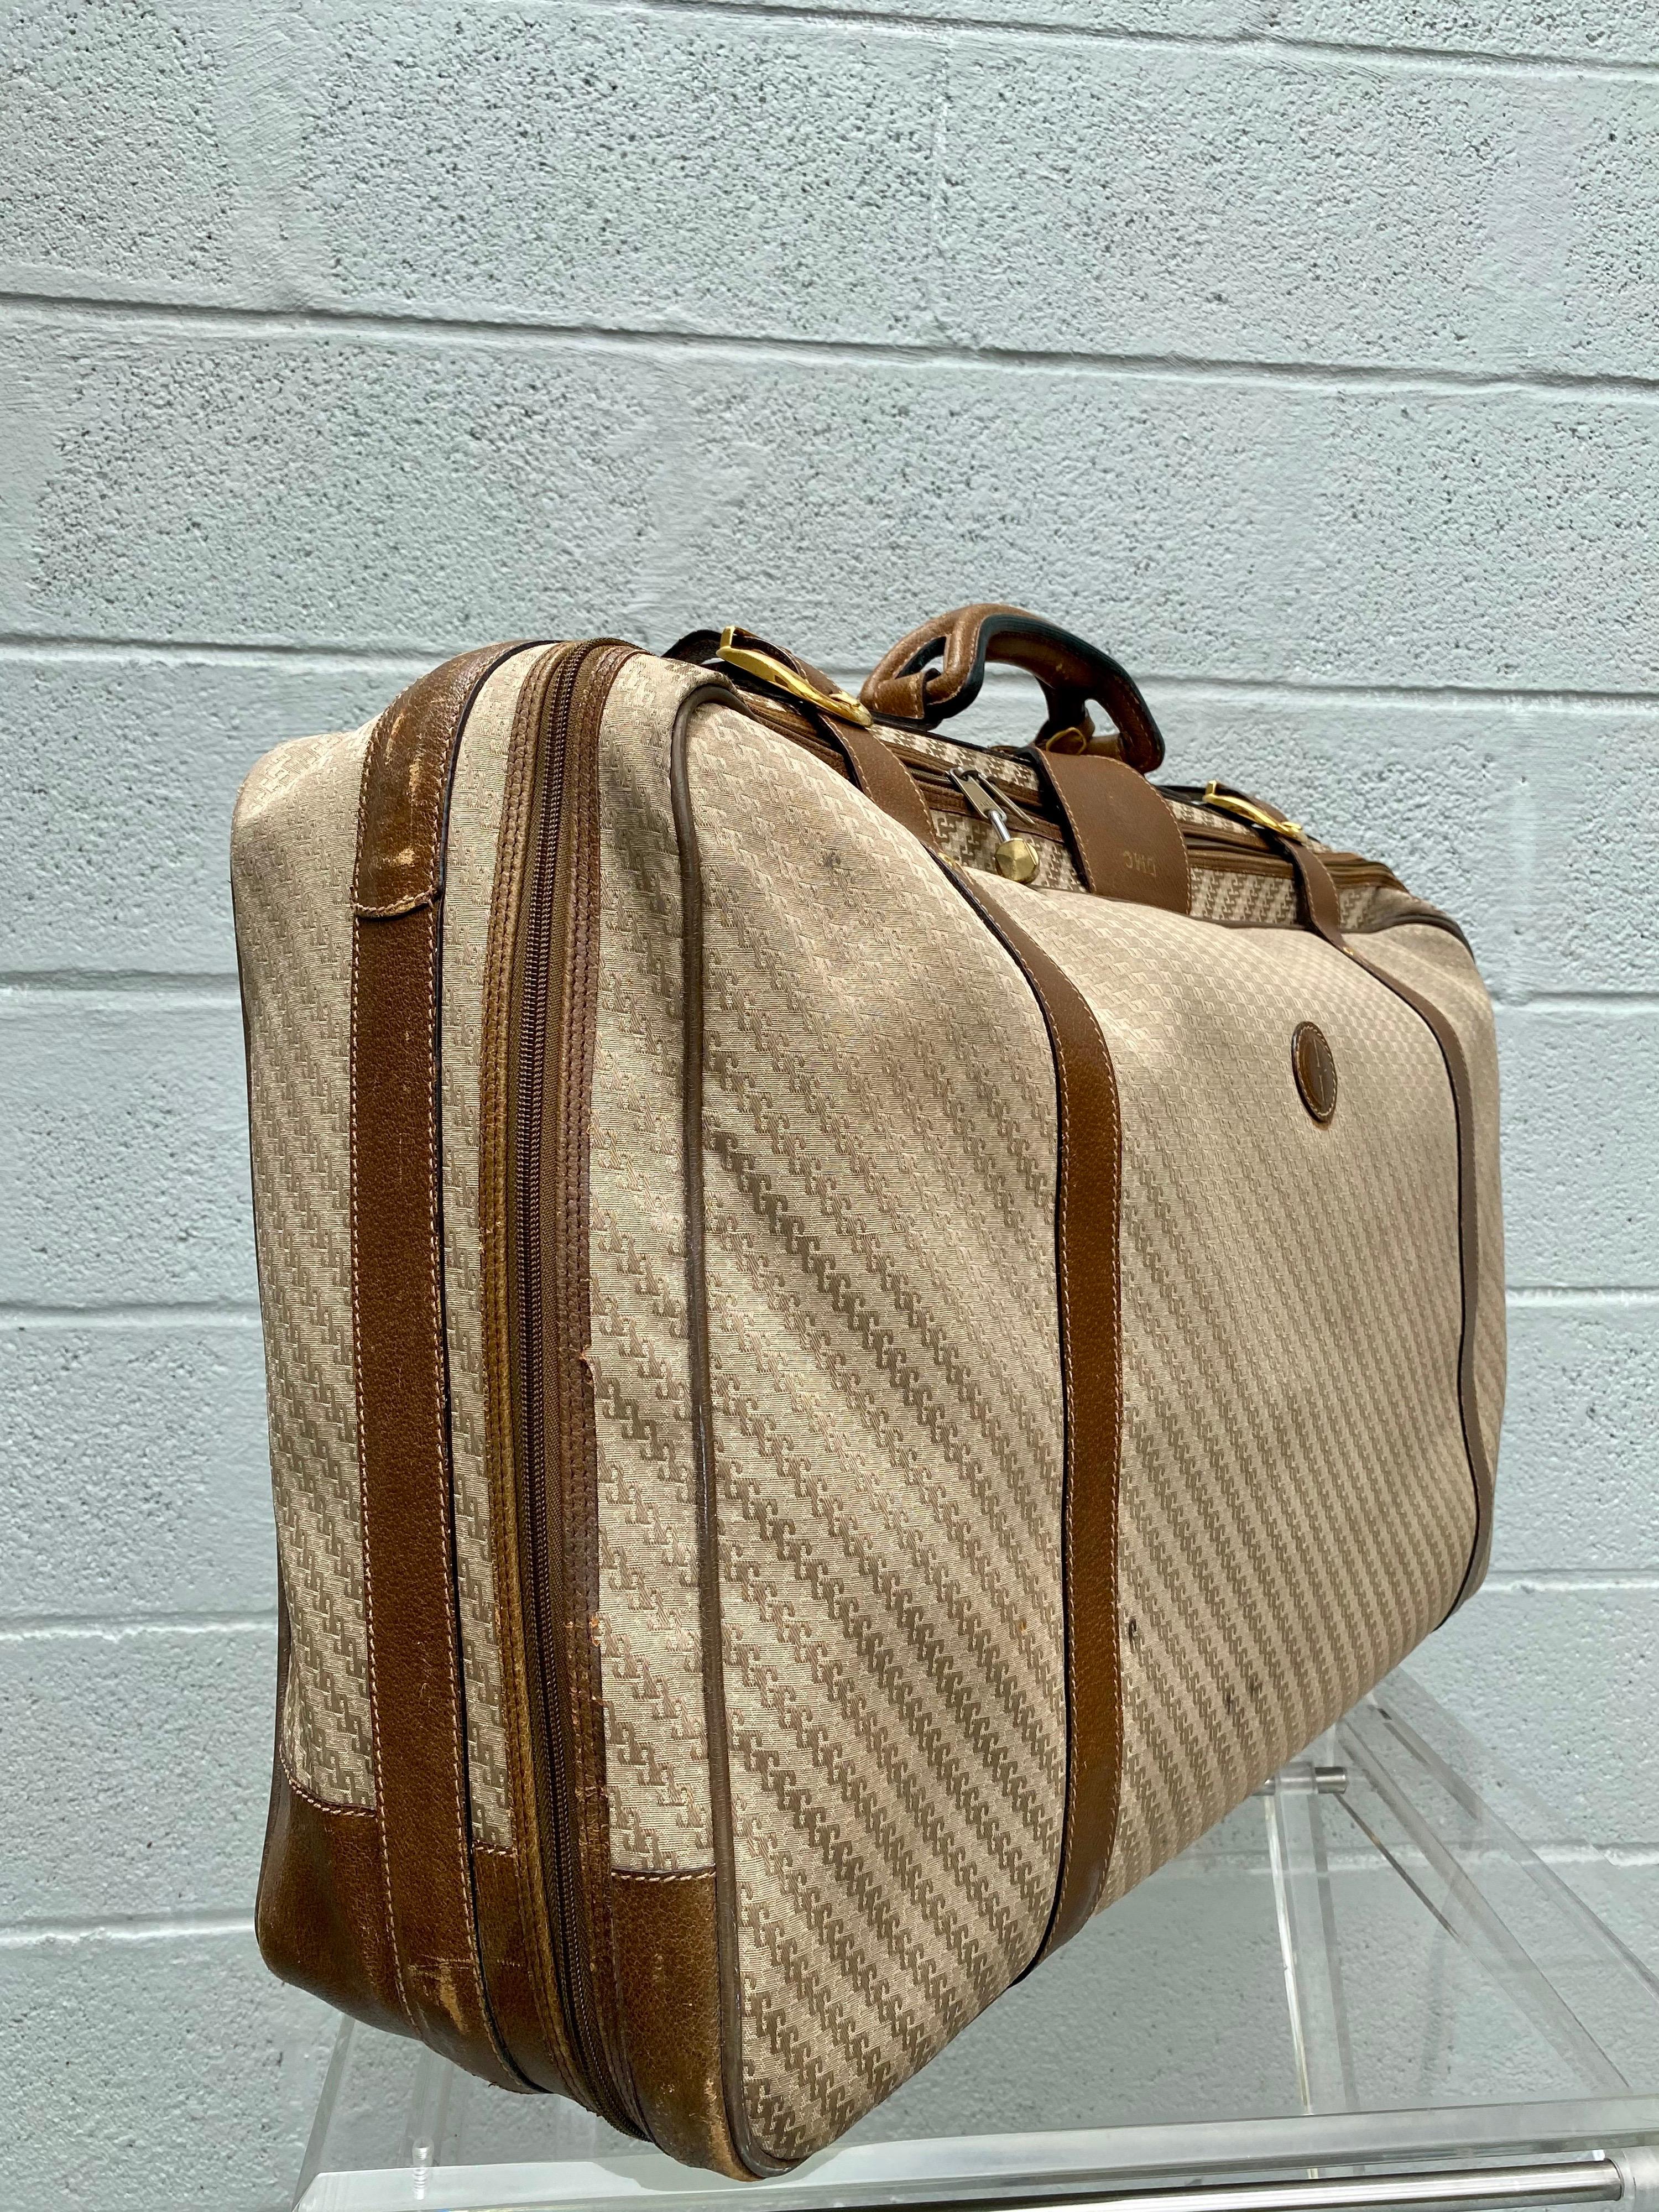 Das klassische, stilvolle Gucci-Gepäck ist mit dem charakteristischen GG-Monogramm auf Canvas gefertigt. Äußerst seltenes Vintage-Gepäck aus den 1970er Jahren. Die Tasche hat einen Lederbesatz, einen gerollten Ledergriff und einen Klappverschluss.